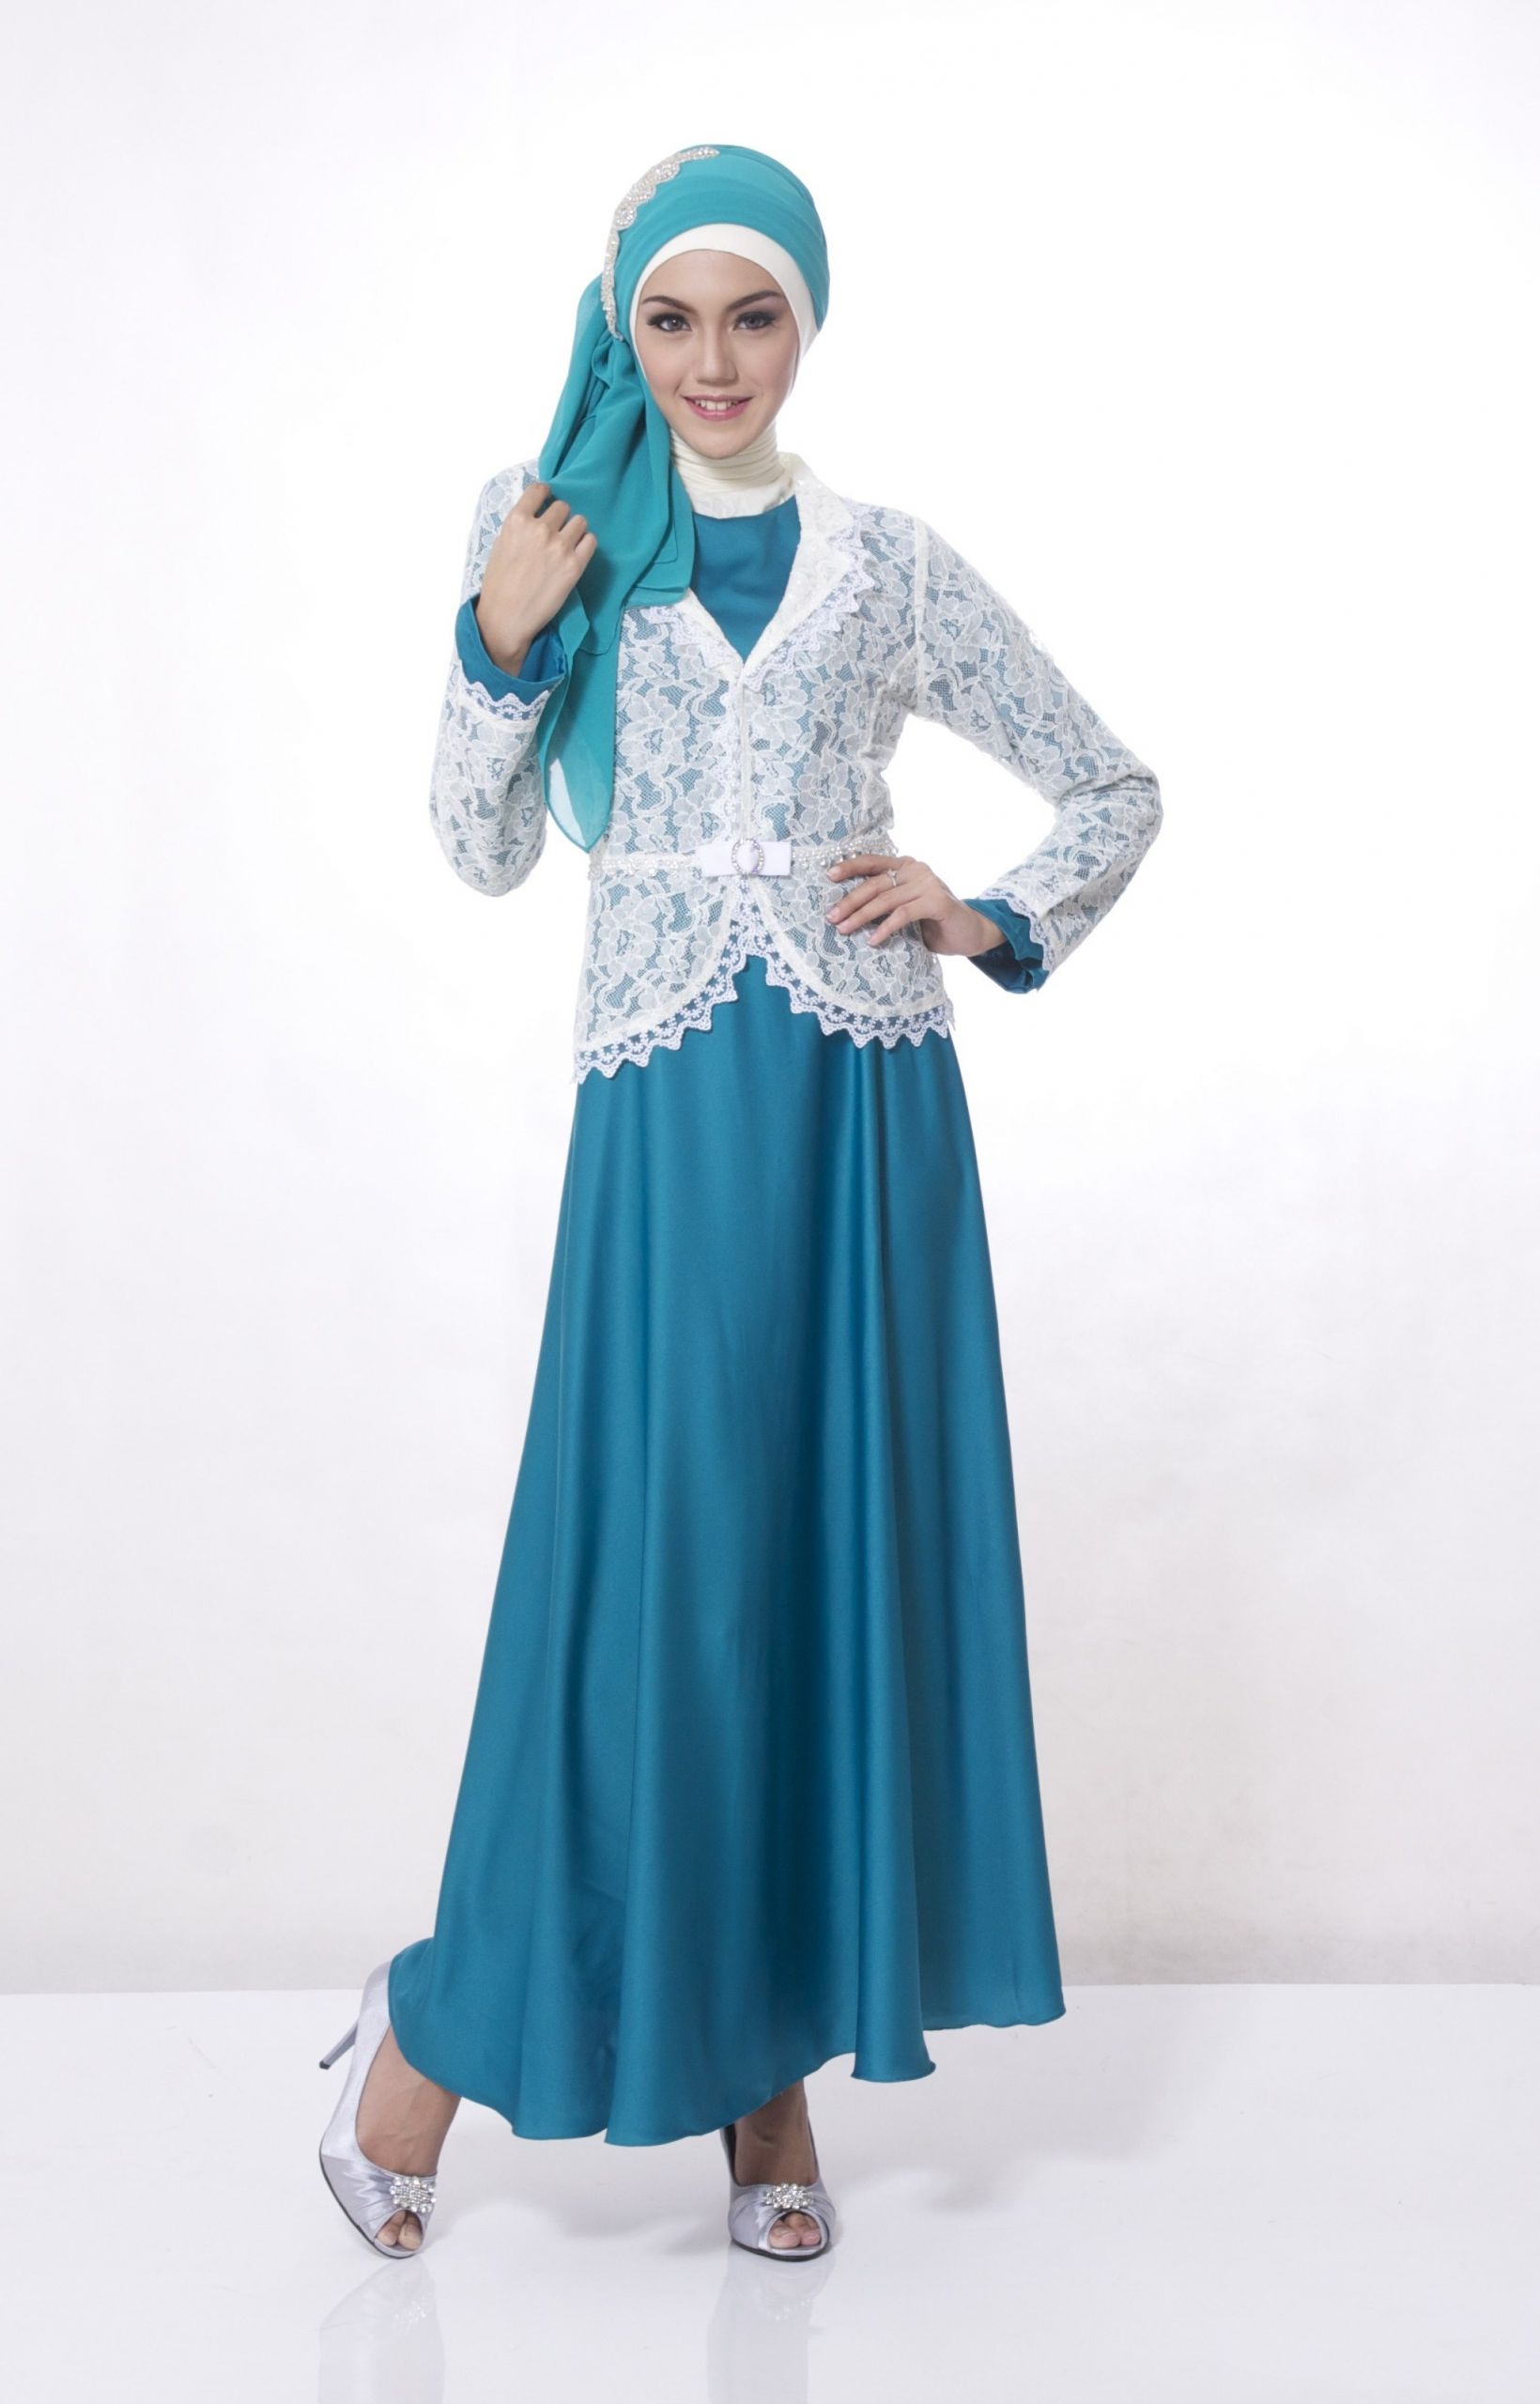 Bentuk Design Baju Lebaran Q5df Contoh Desain Baju Muslim Terbaru Di 2015 – Pipitfashion